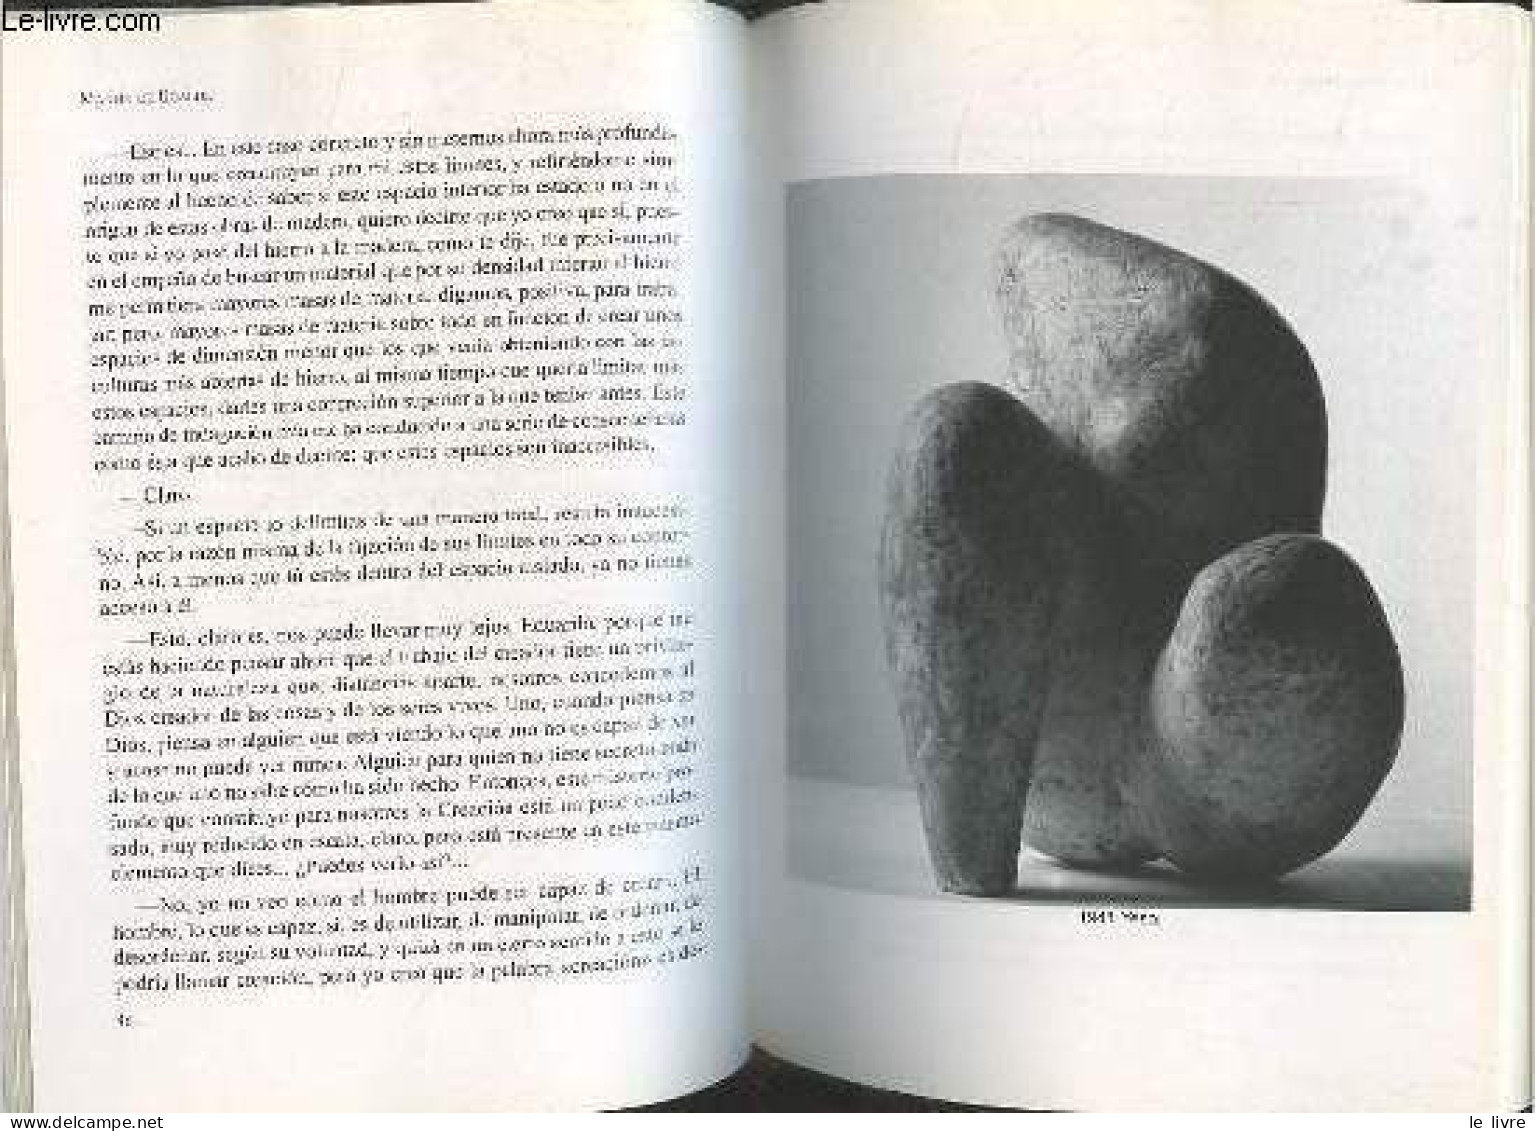 Hablando Con Chillida Vida Y Obra (Periodo 1924-1975) - Tercera Edicion Revisada Y Aumentada - Coleccion Ipar Haizea. - - Culture